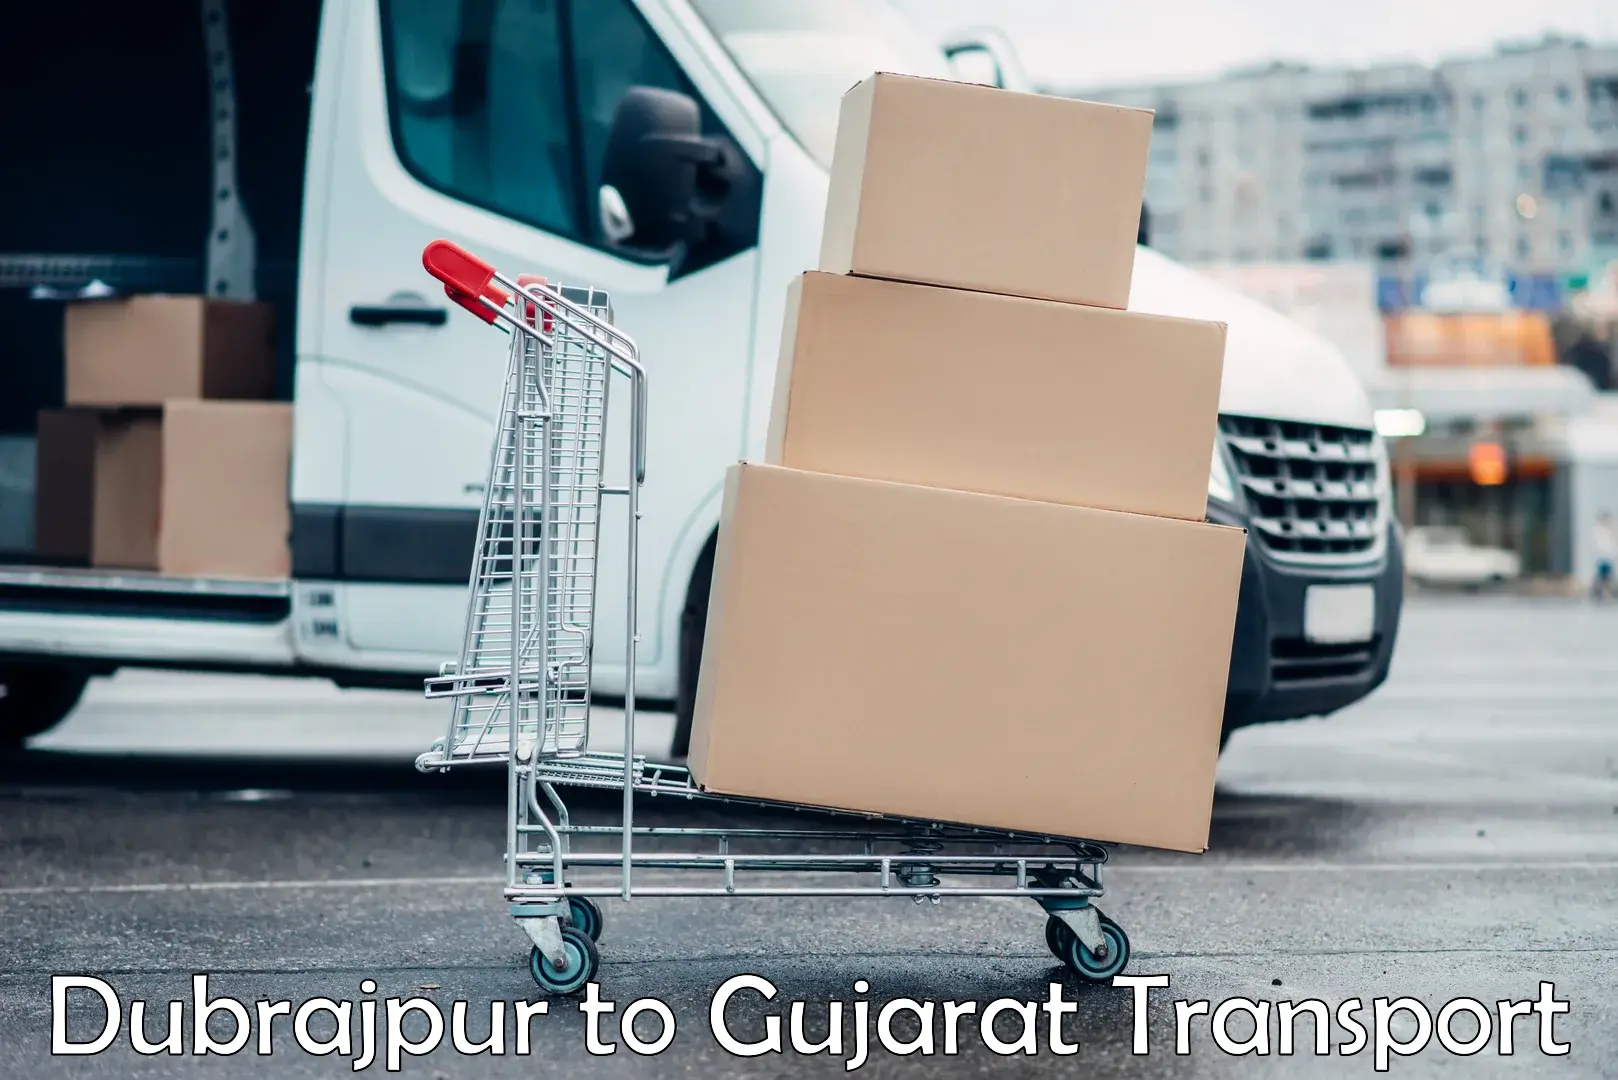 Transport in sharing Dubrajpur to Patan Gujarat